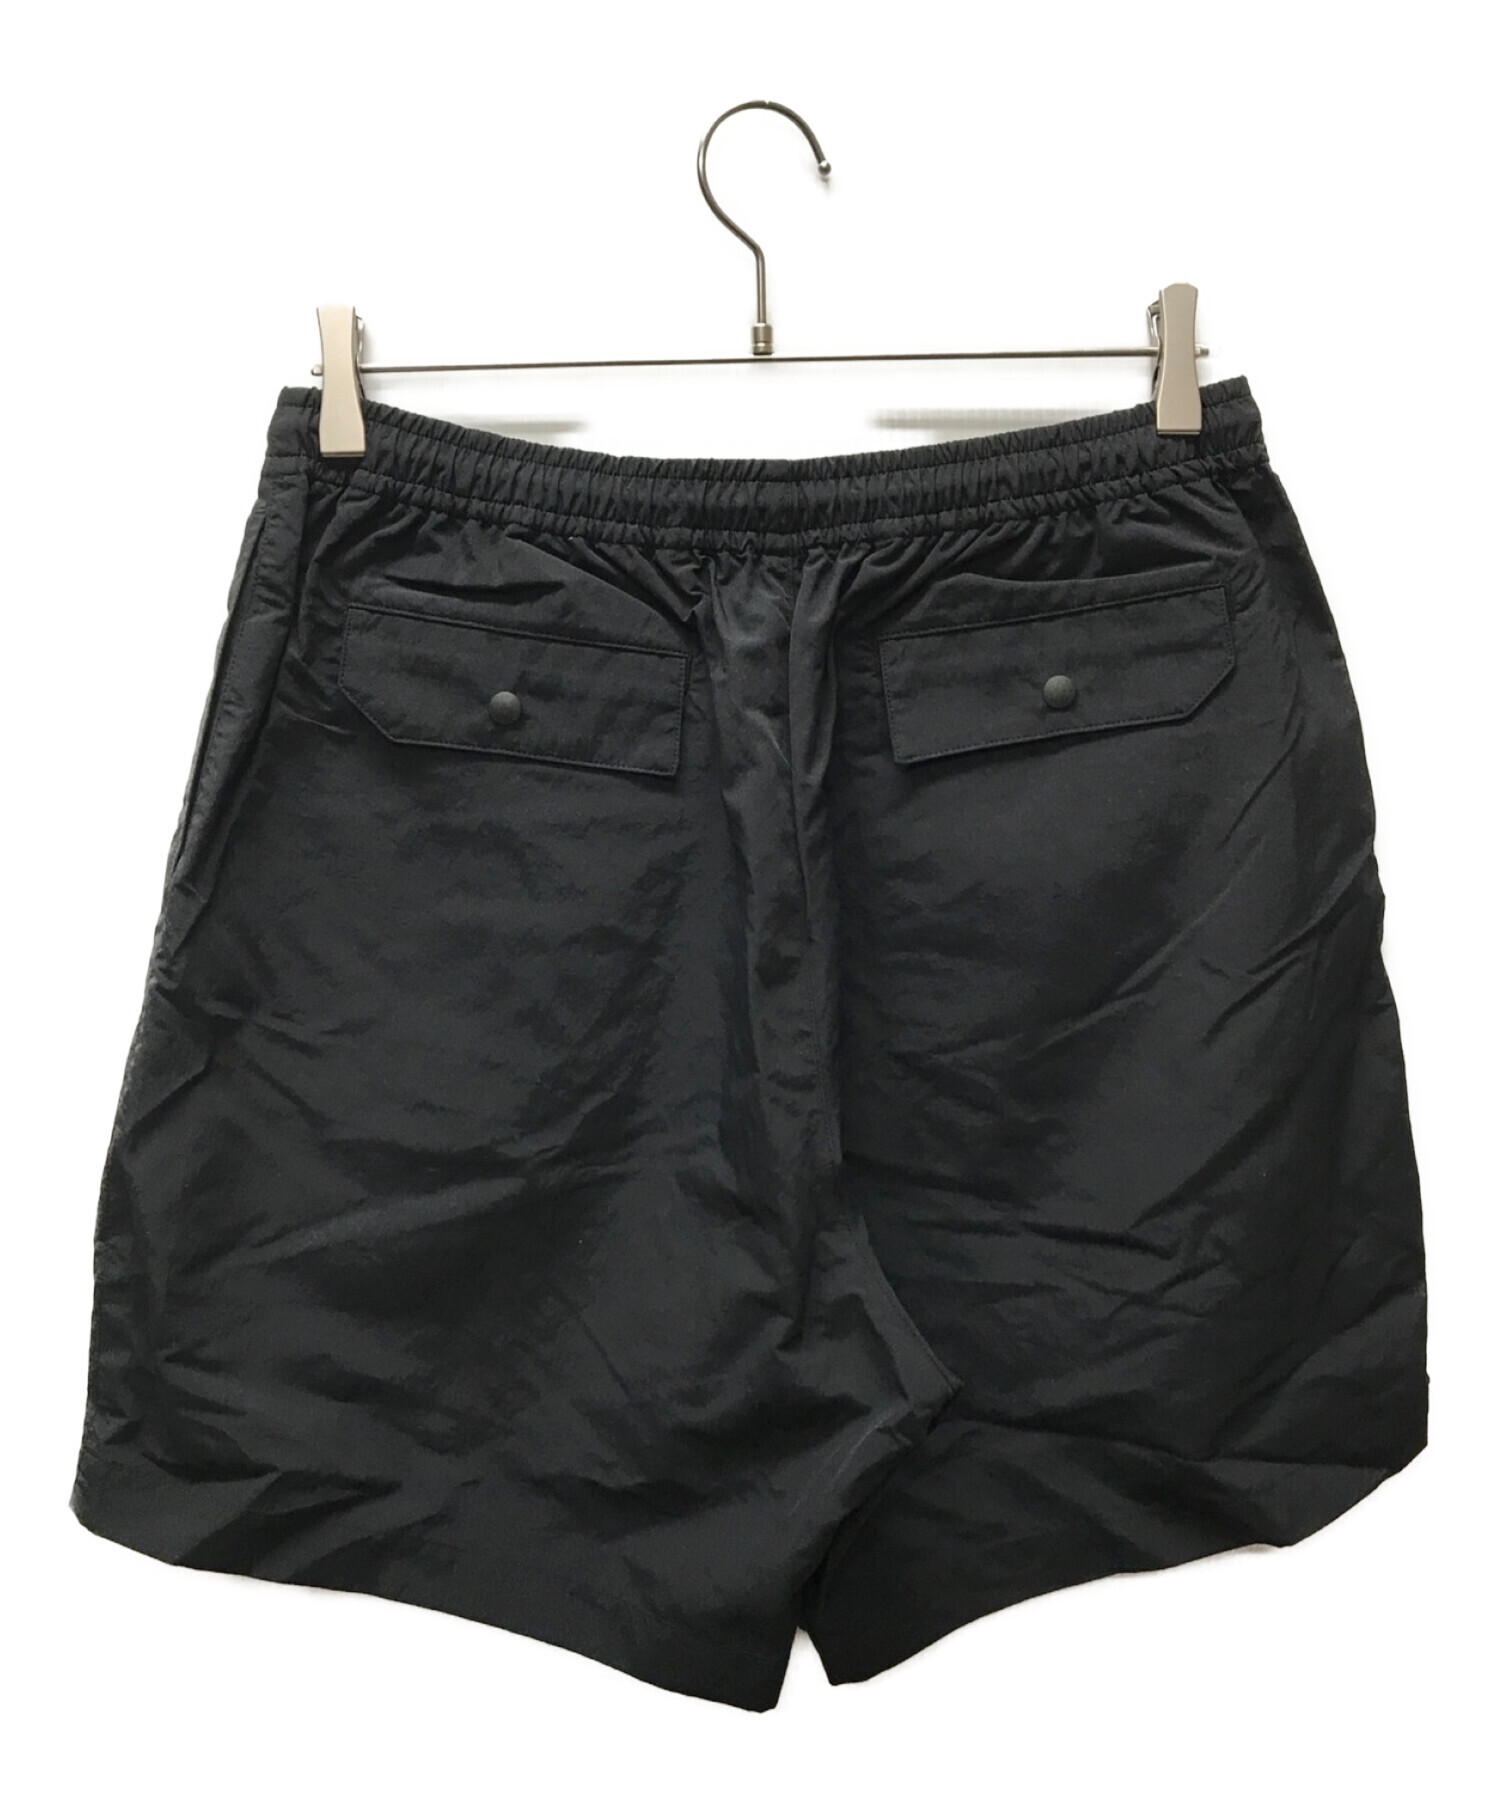 ennoy professional Nylon Shorts (BLACK)ご検討よろしくお願いいたします